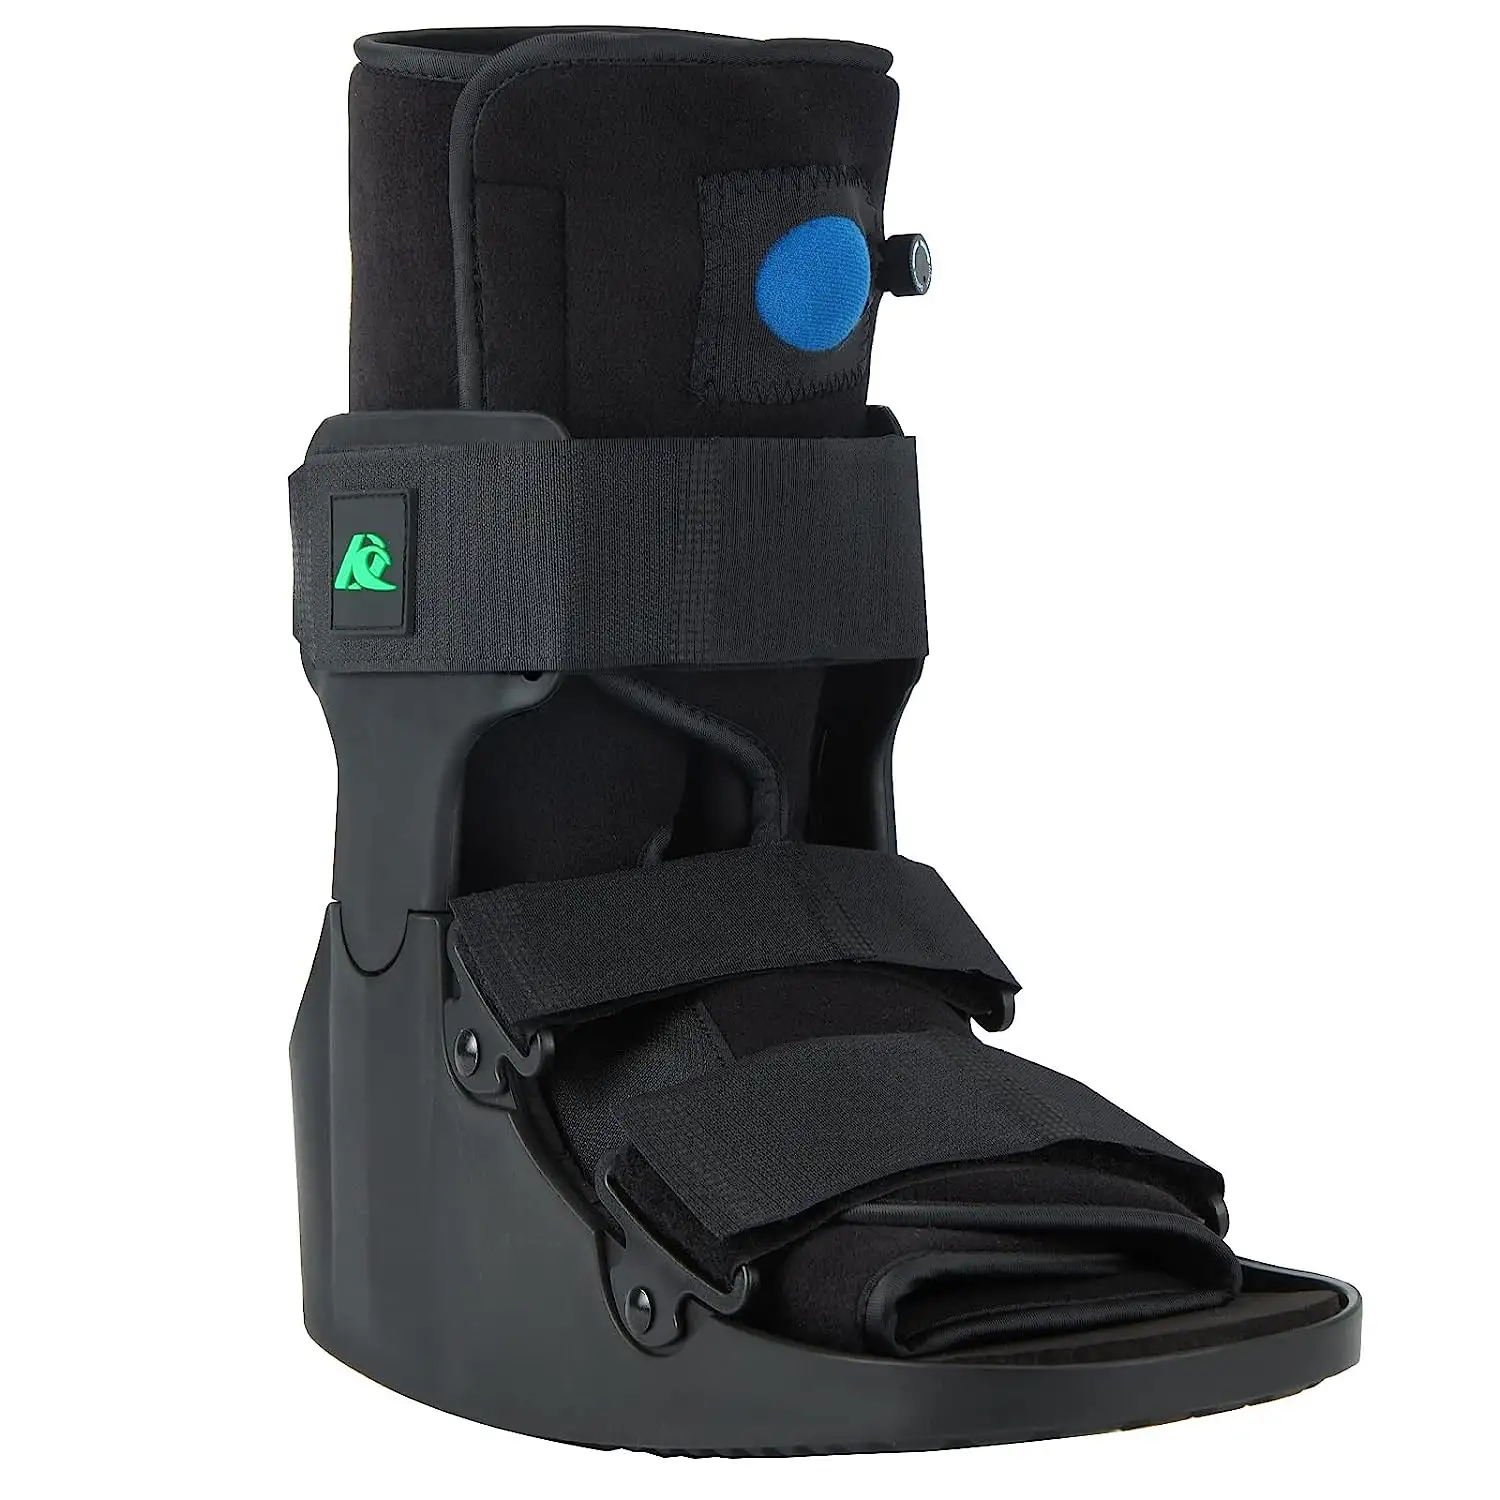 Preiswerte orthopädische Ausrüstung Fußschutz Laufstiefel gegen Verletzung